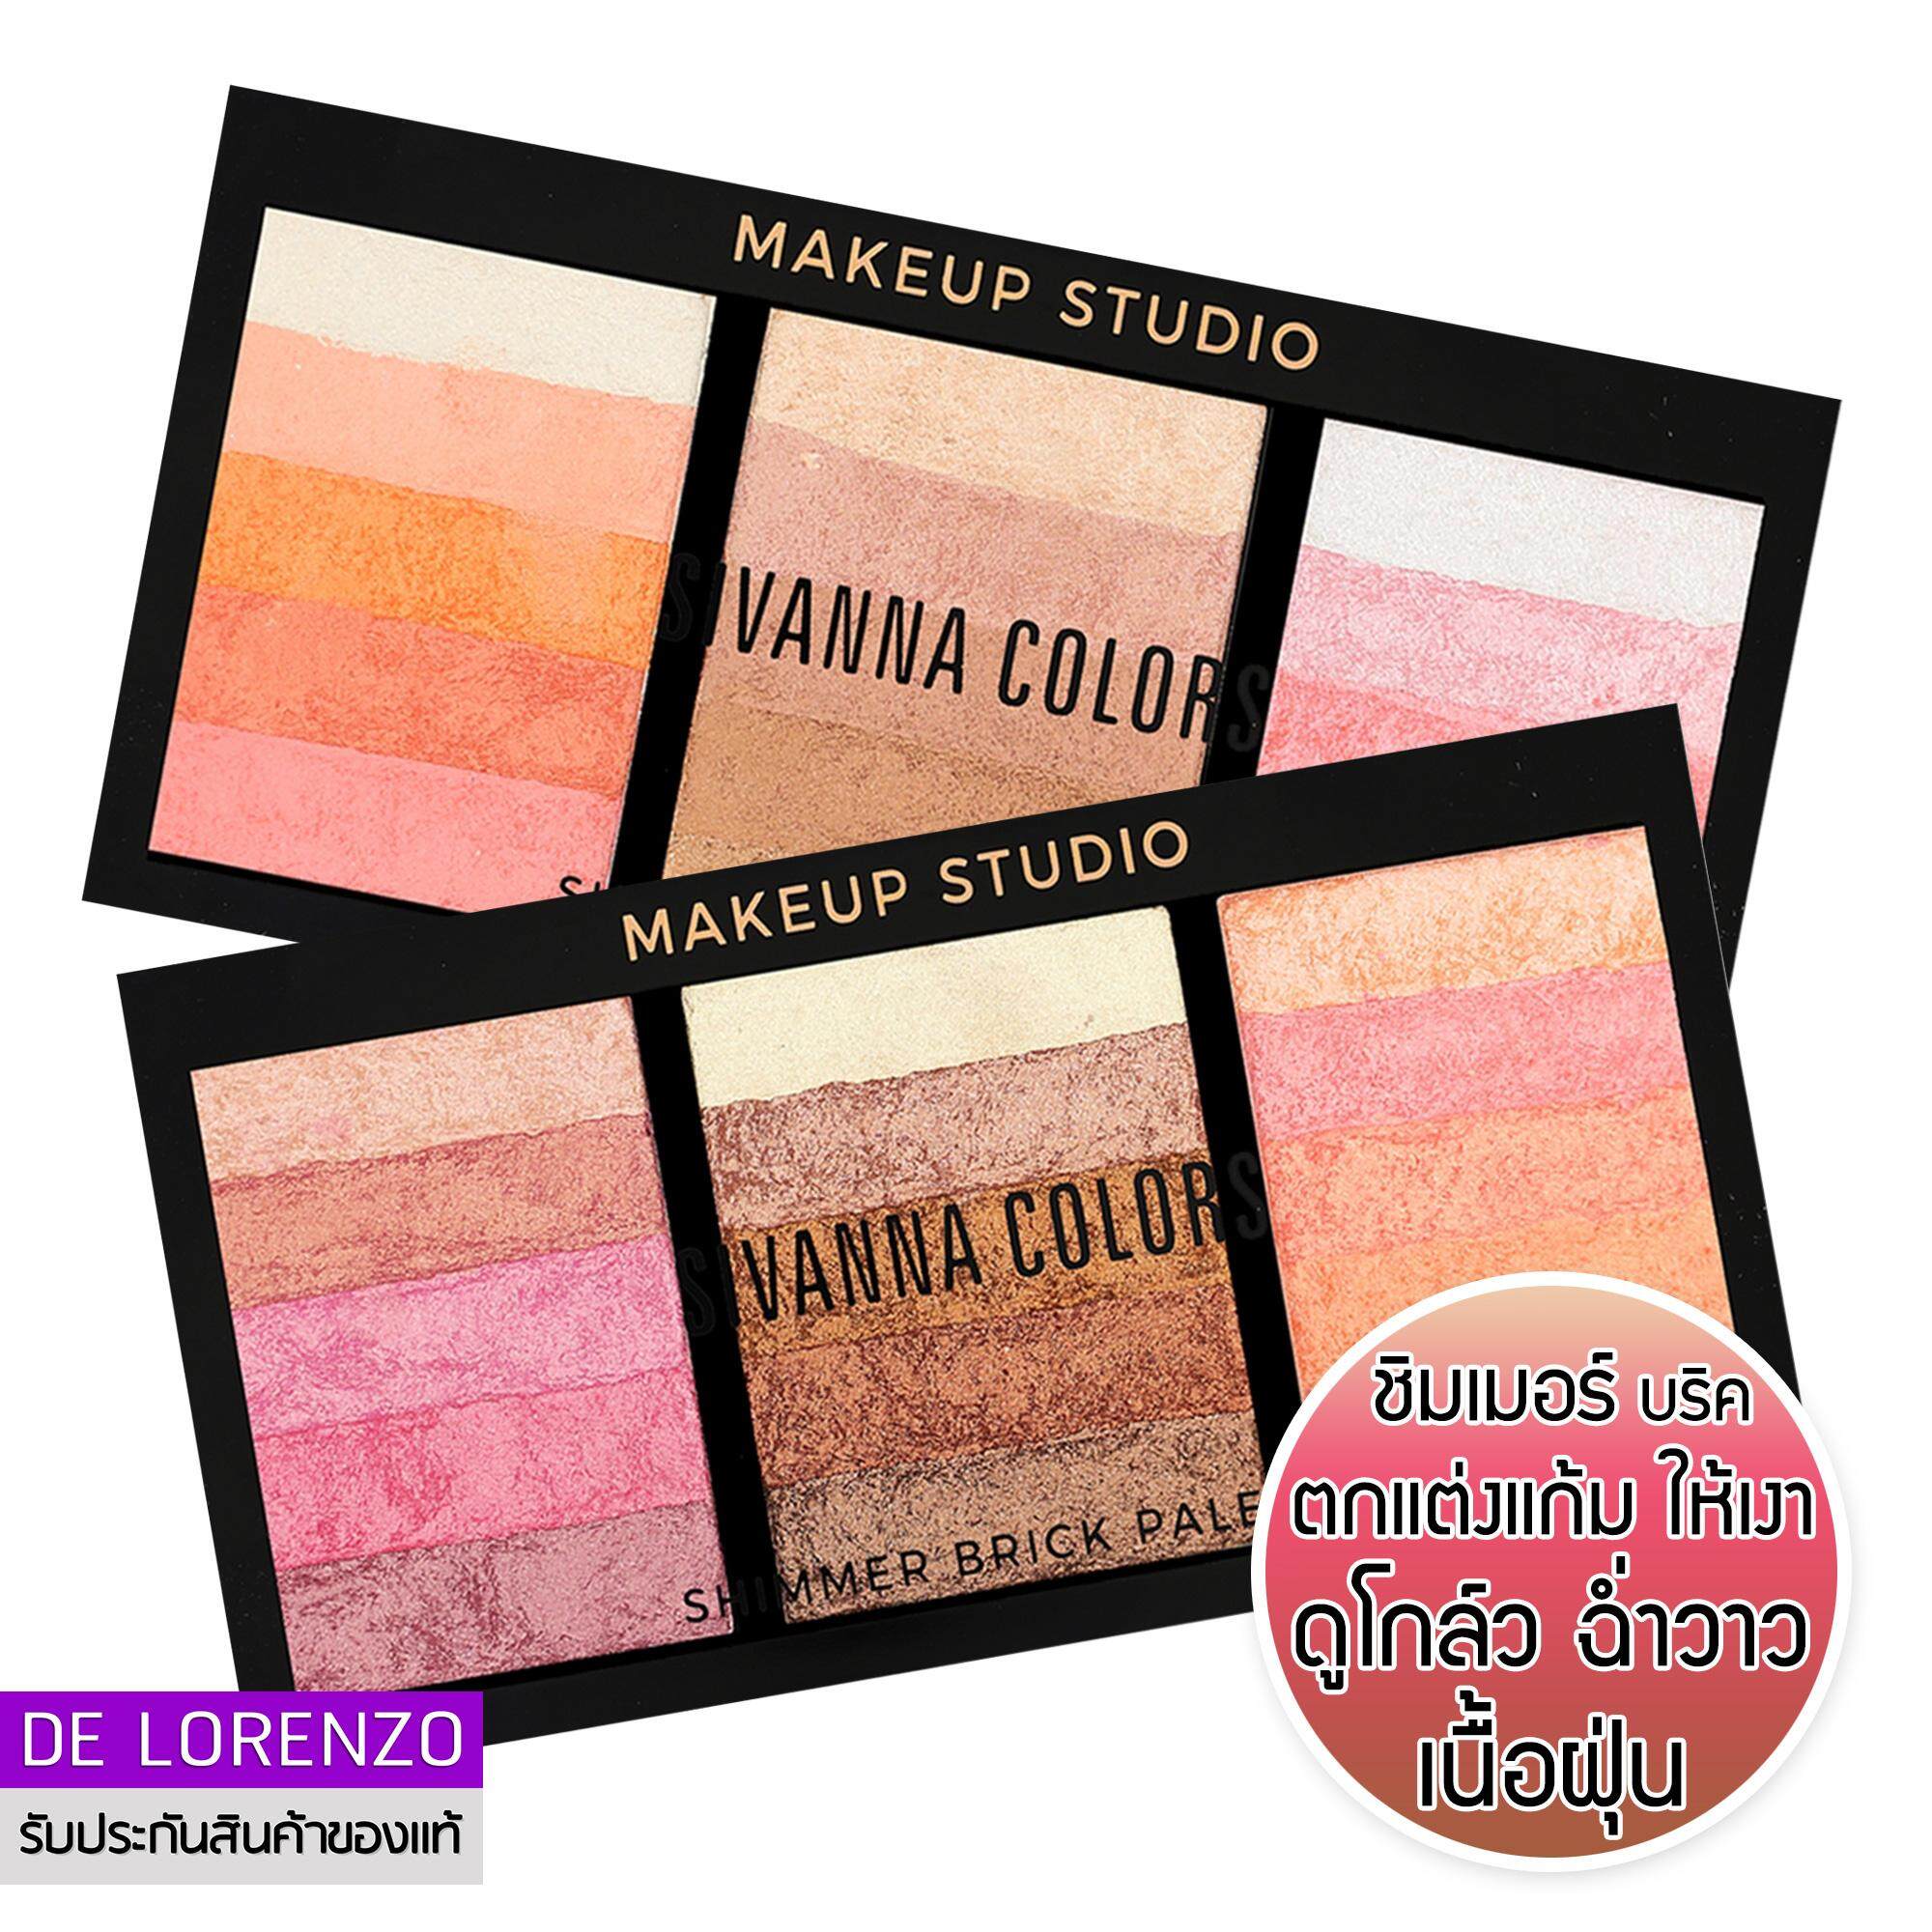 Sivanna Colors Shimmer Brick Palette 20g HF389 บลัชออน สิวันนา ปัดแก้ม ชิมเมอร์ บริค